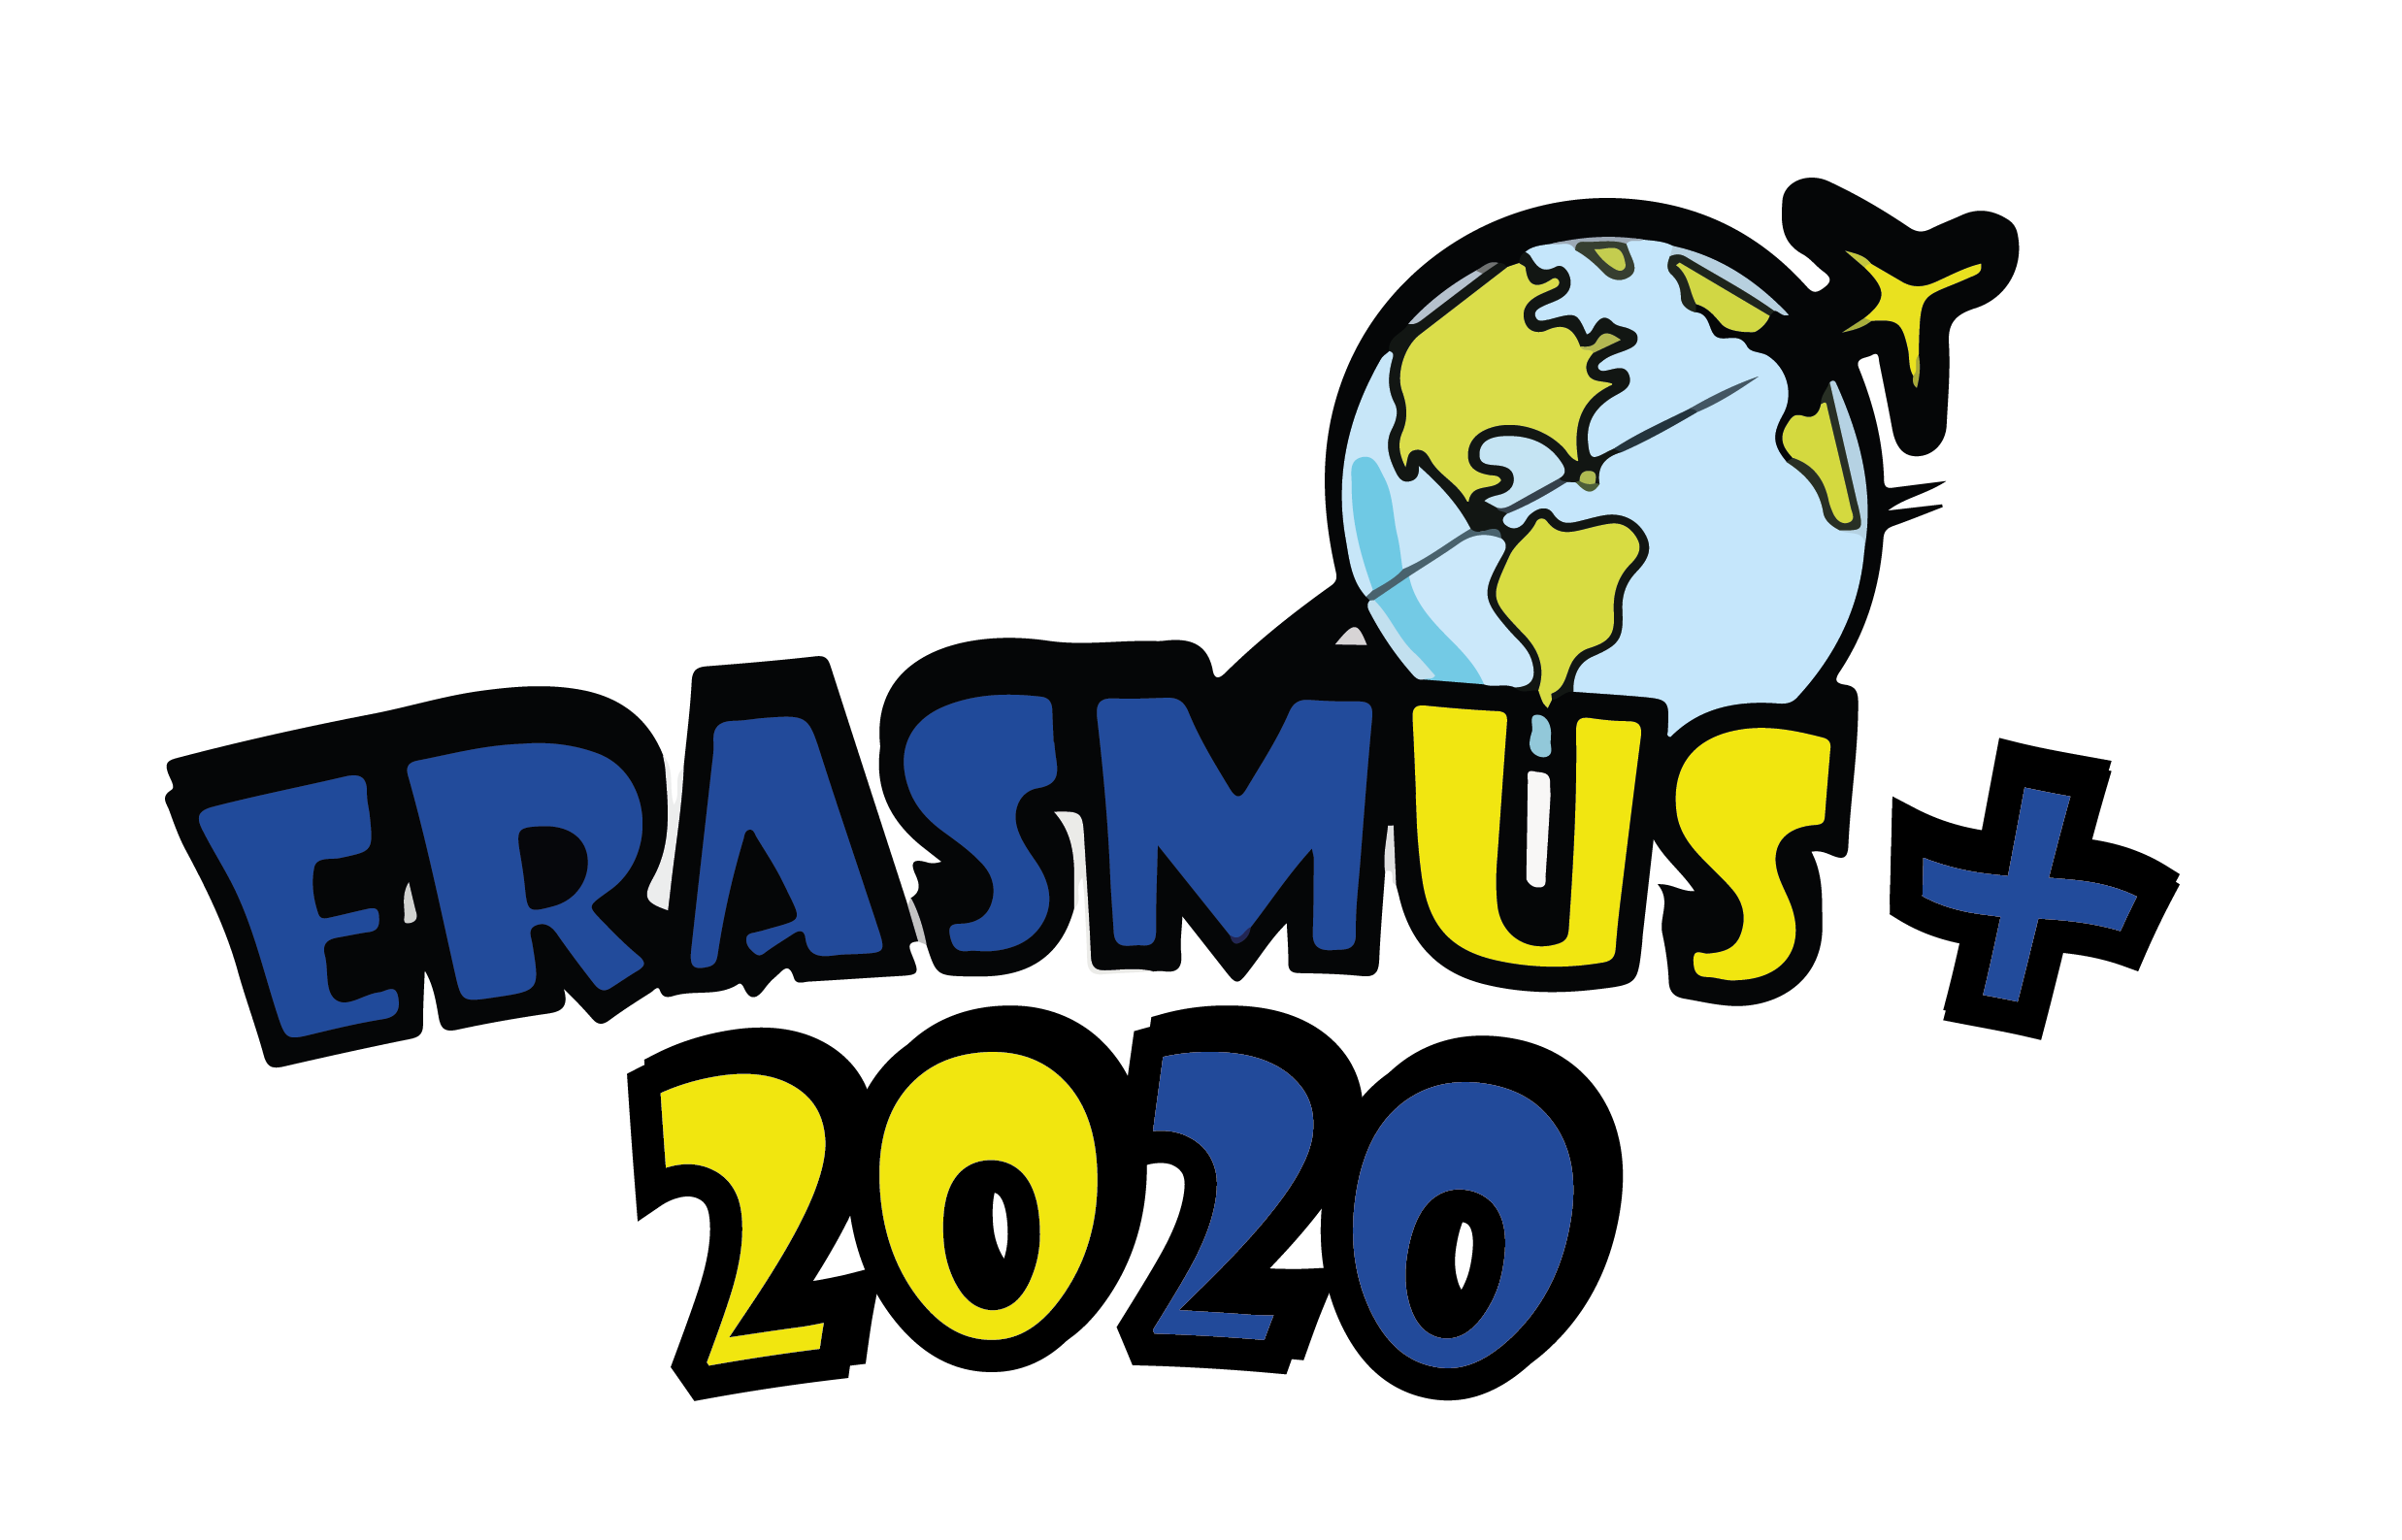 Erasmus+ 2020